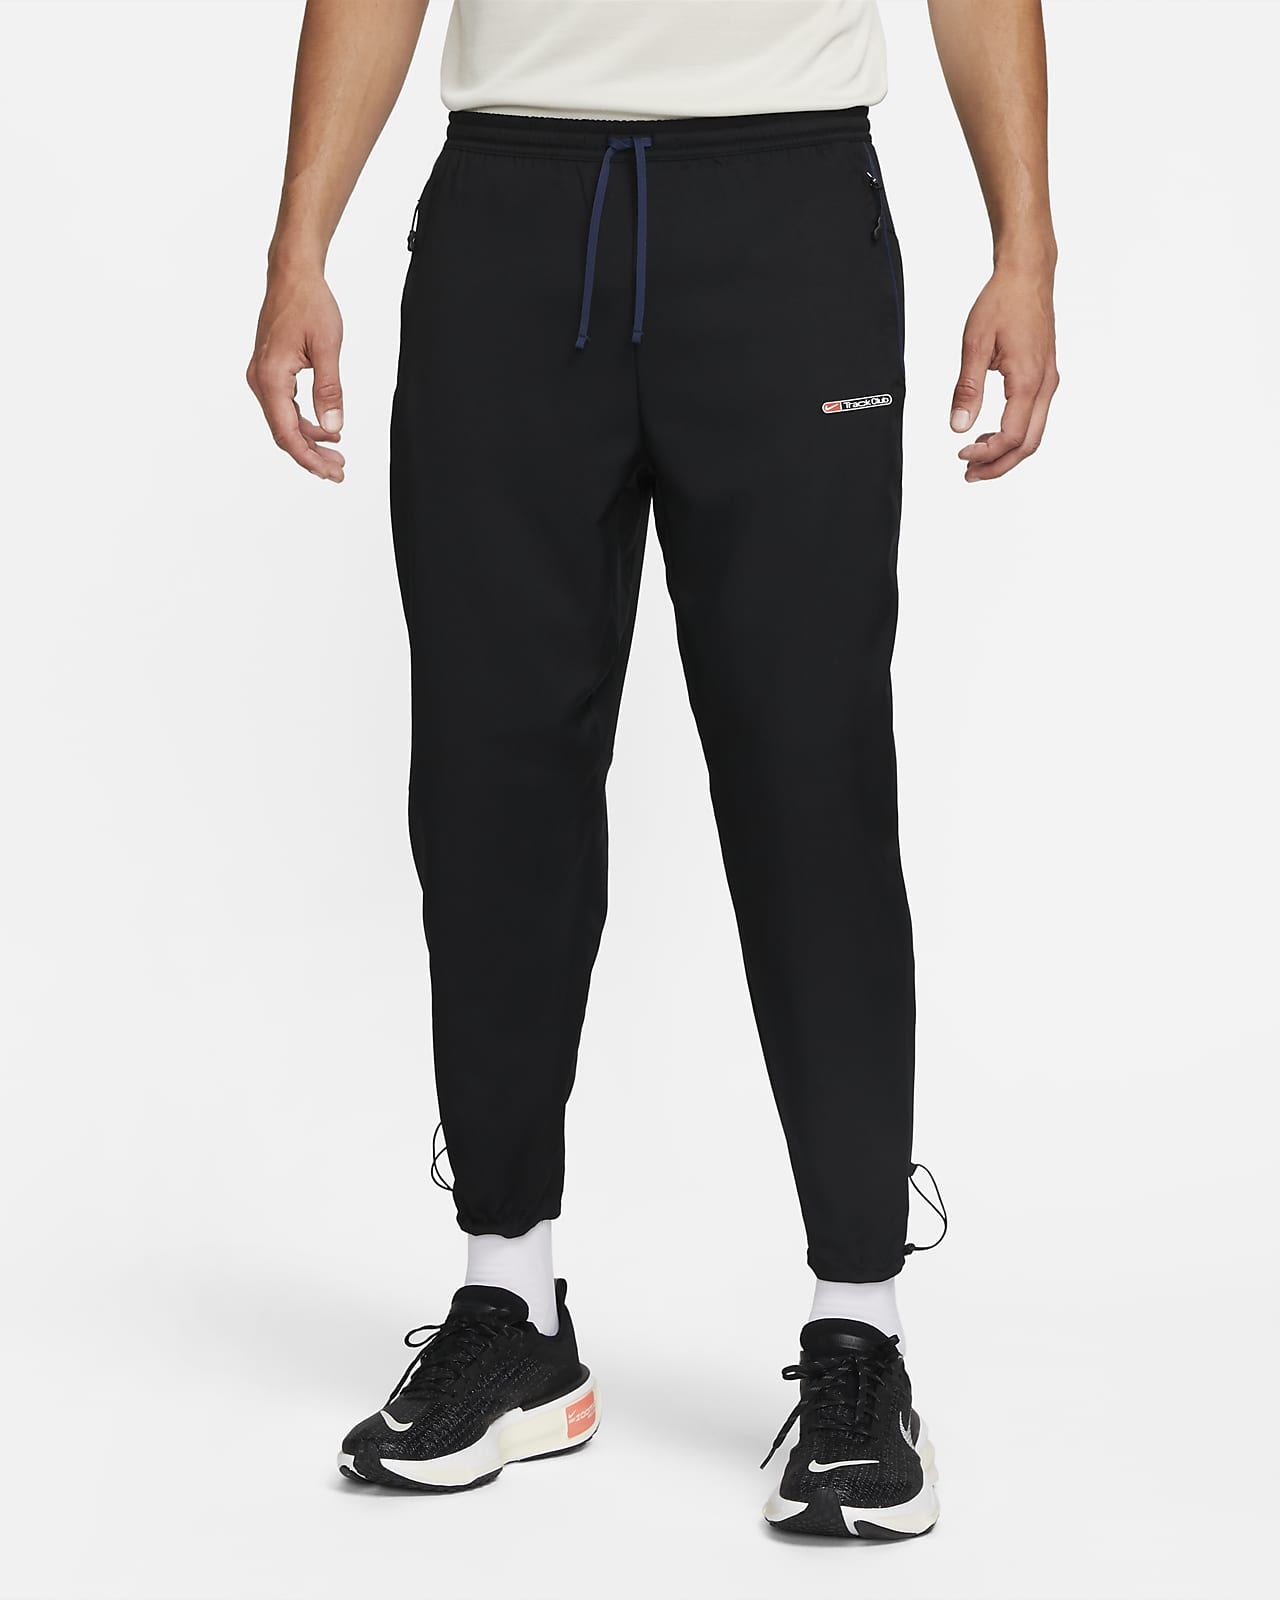 Ανδρικό παντελόνι Dri-FIT για τρέξιμο Nike Challenger Track Club